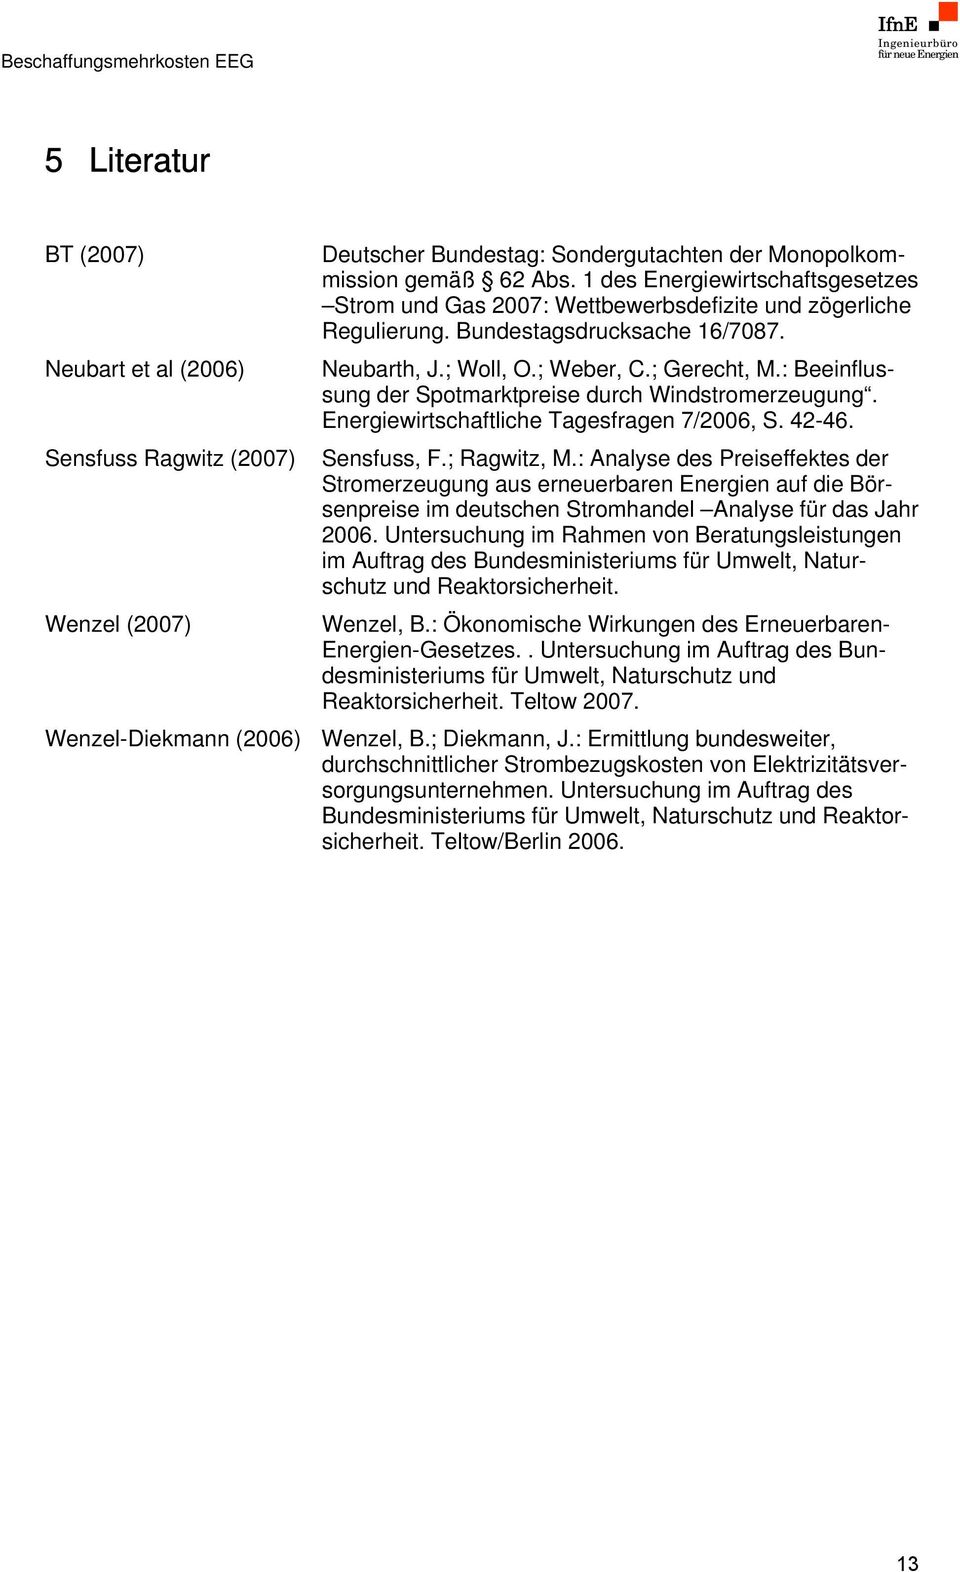 : Beeinflussung der Spotmarktpreise durch Windstromerzeugung. Energiewirtschaftliche Tagesfragen 7/2006, S. 42-46. Sensfuss, F.; Ragwitz, M.